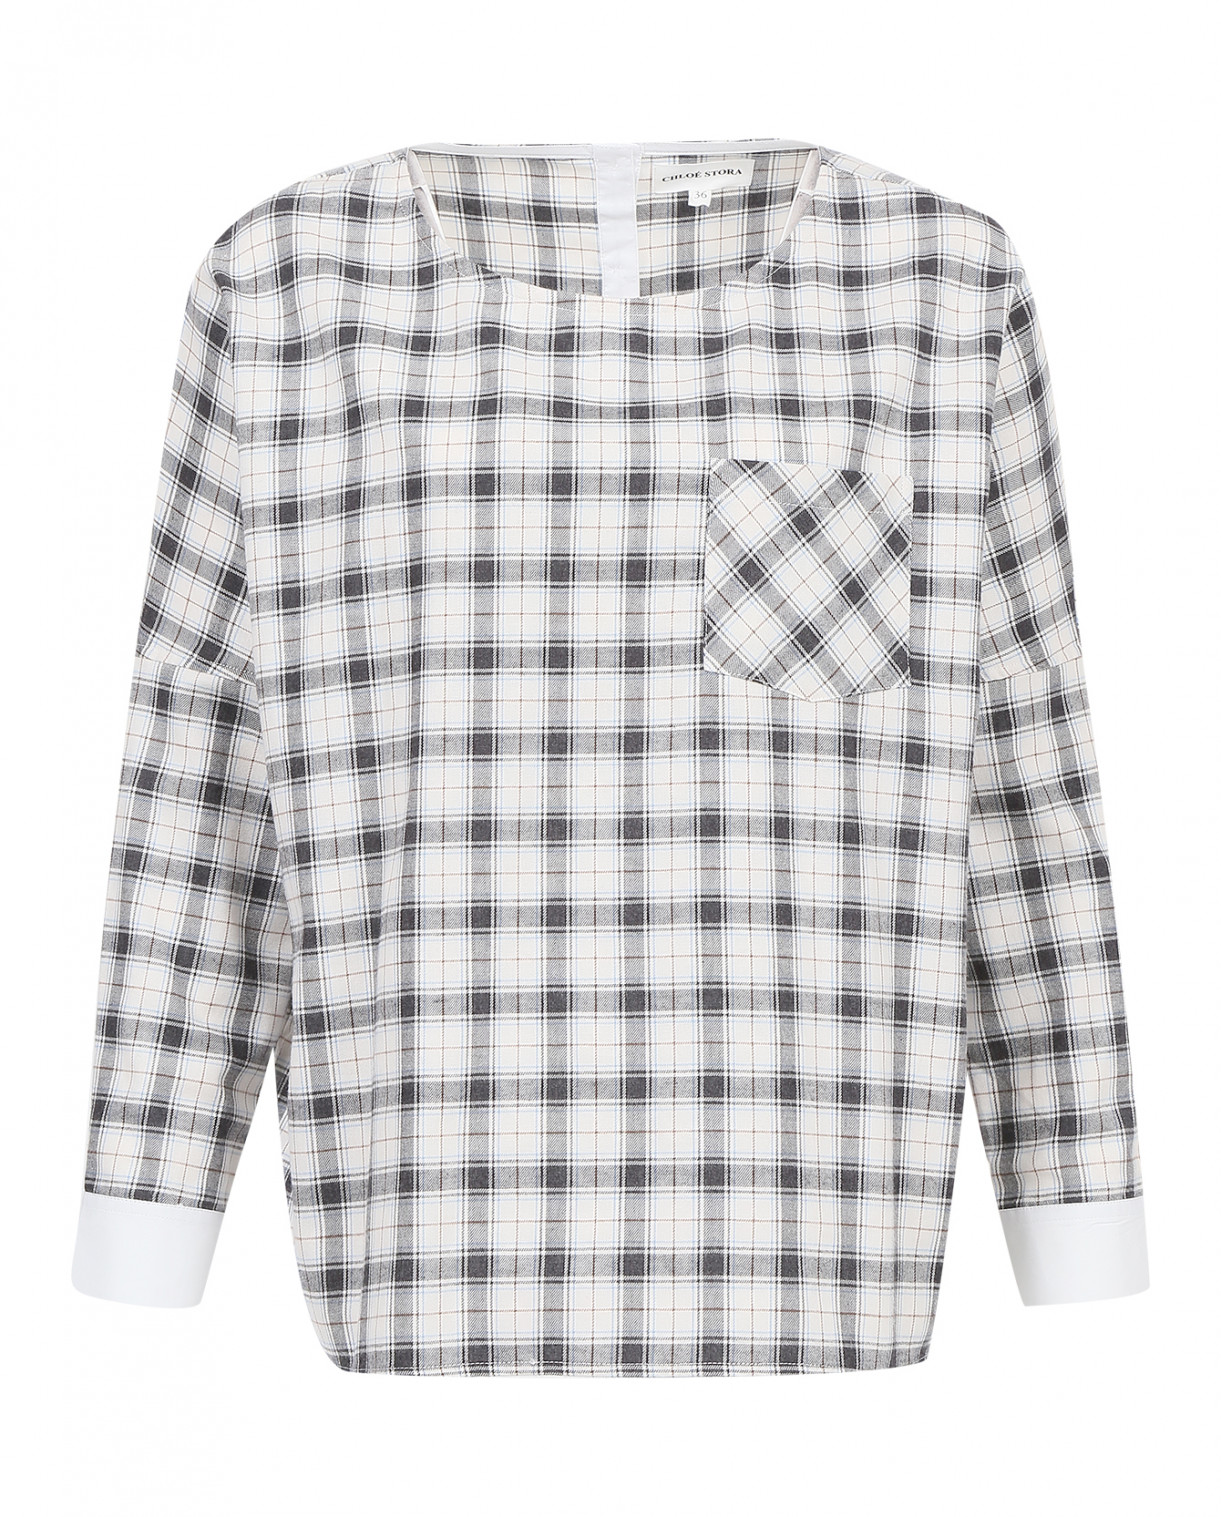 Блуза из хлопка с принтом "клетка" Chloé Stora  –  Общий вид  – Цвет:  Белый